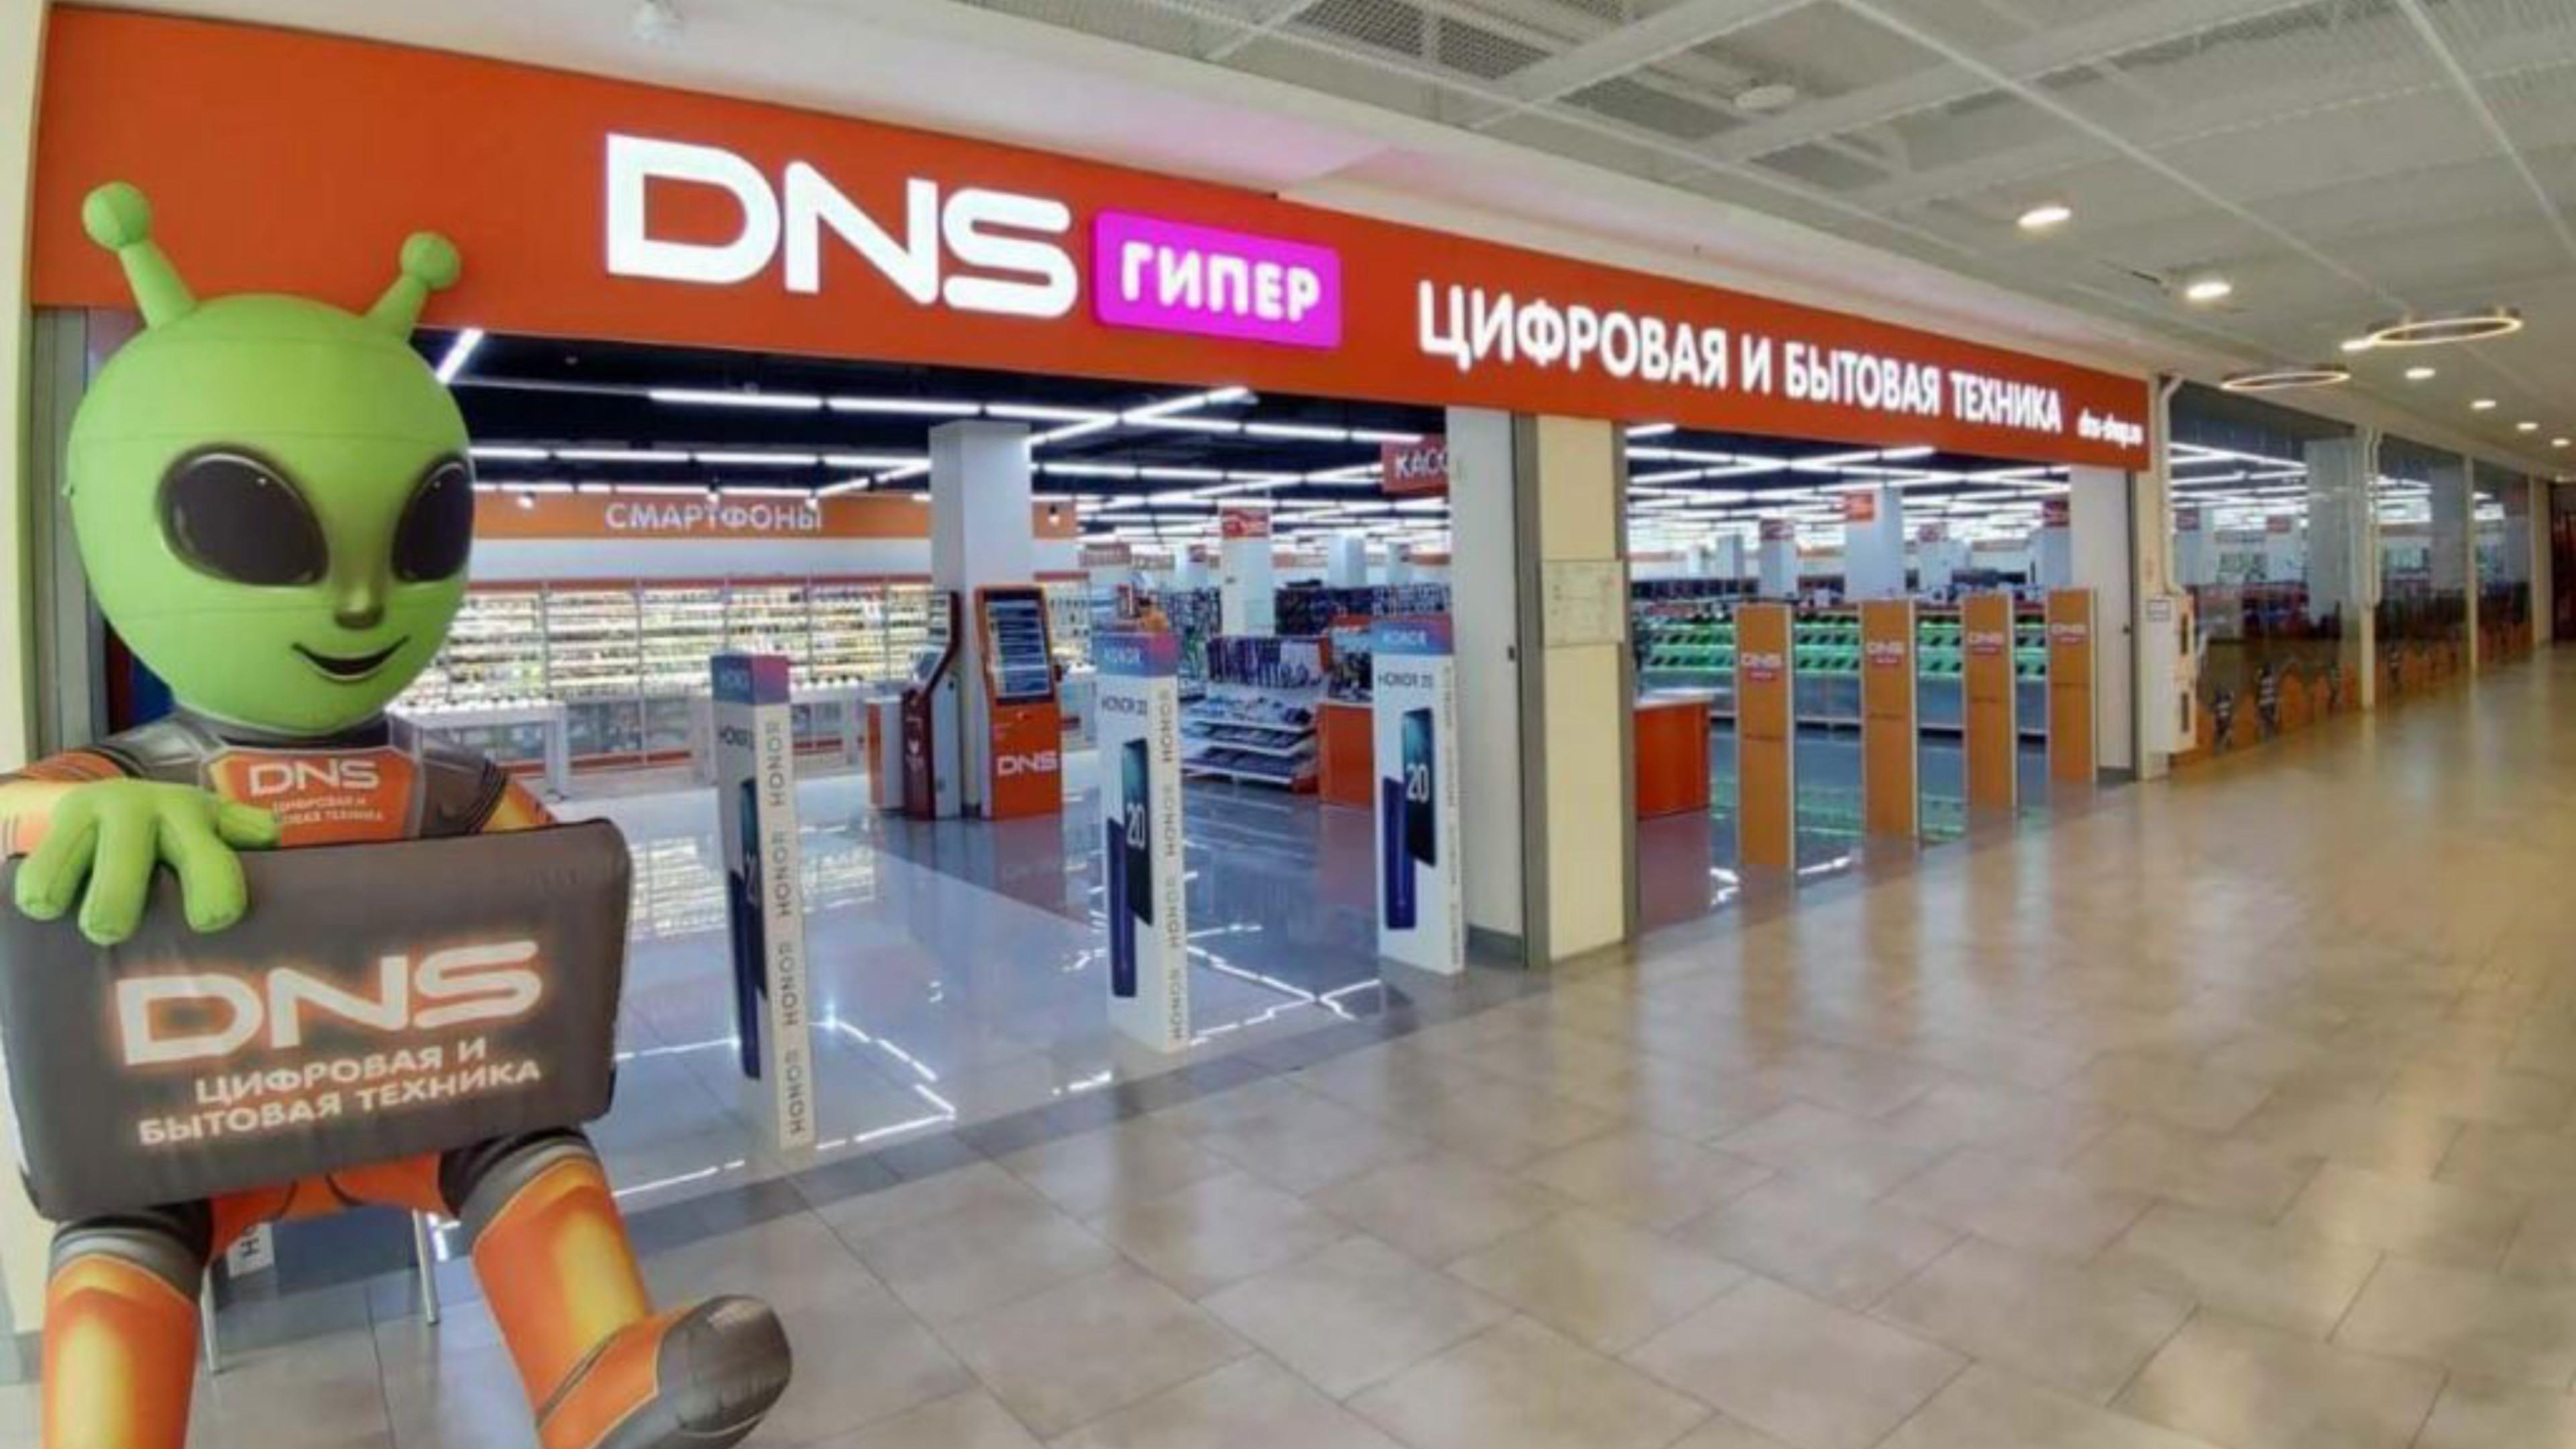 Сайт сети dns. ДНС Волоколамск. Десс. ДНС гипер. Торговая сеть ДНС.